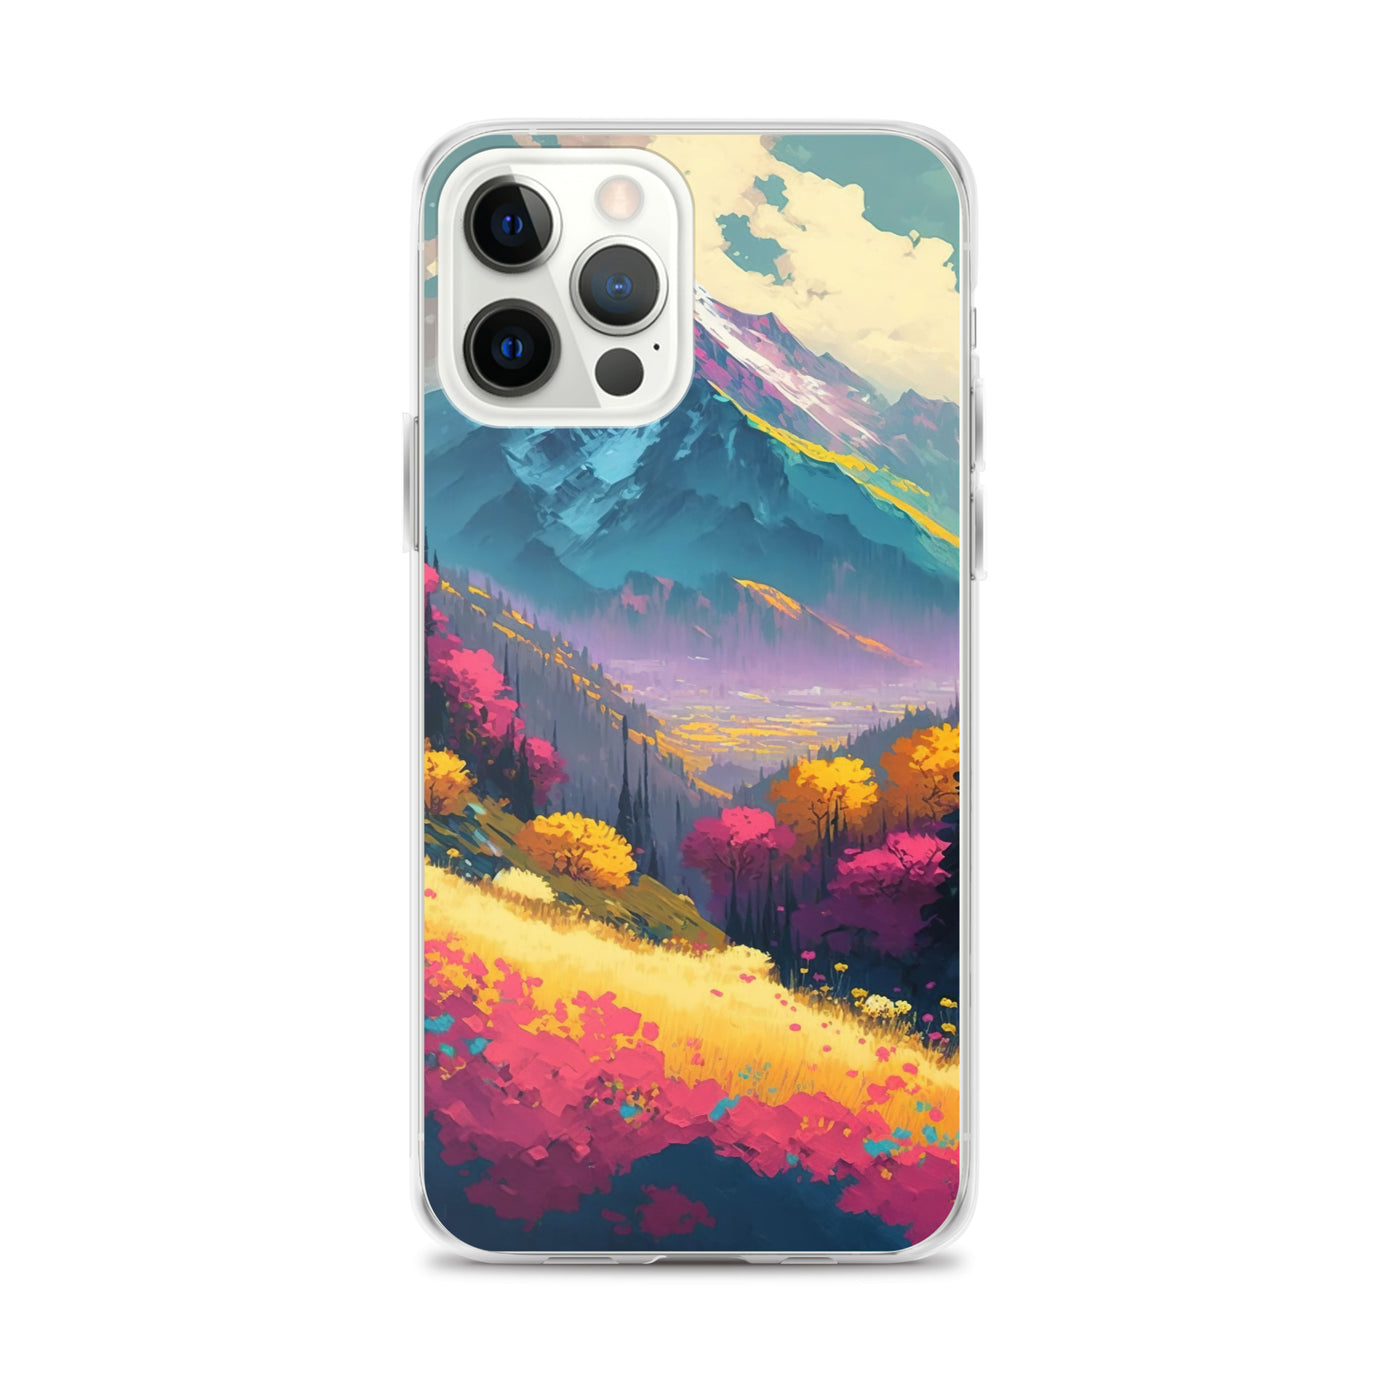 Berge, pinke und gelbe Bäume, sowie Blumen - Farbige Malerei - iPhone Schutzhülle (durchsichtig) berge xxx iPhone 12 Pro Max